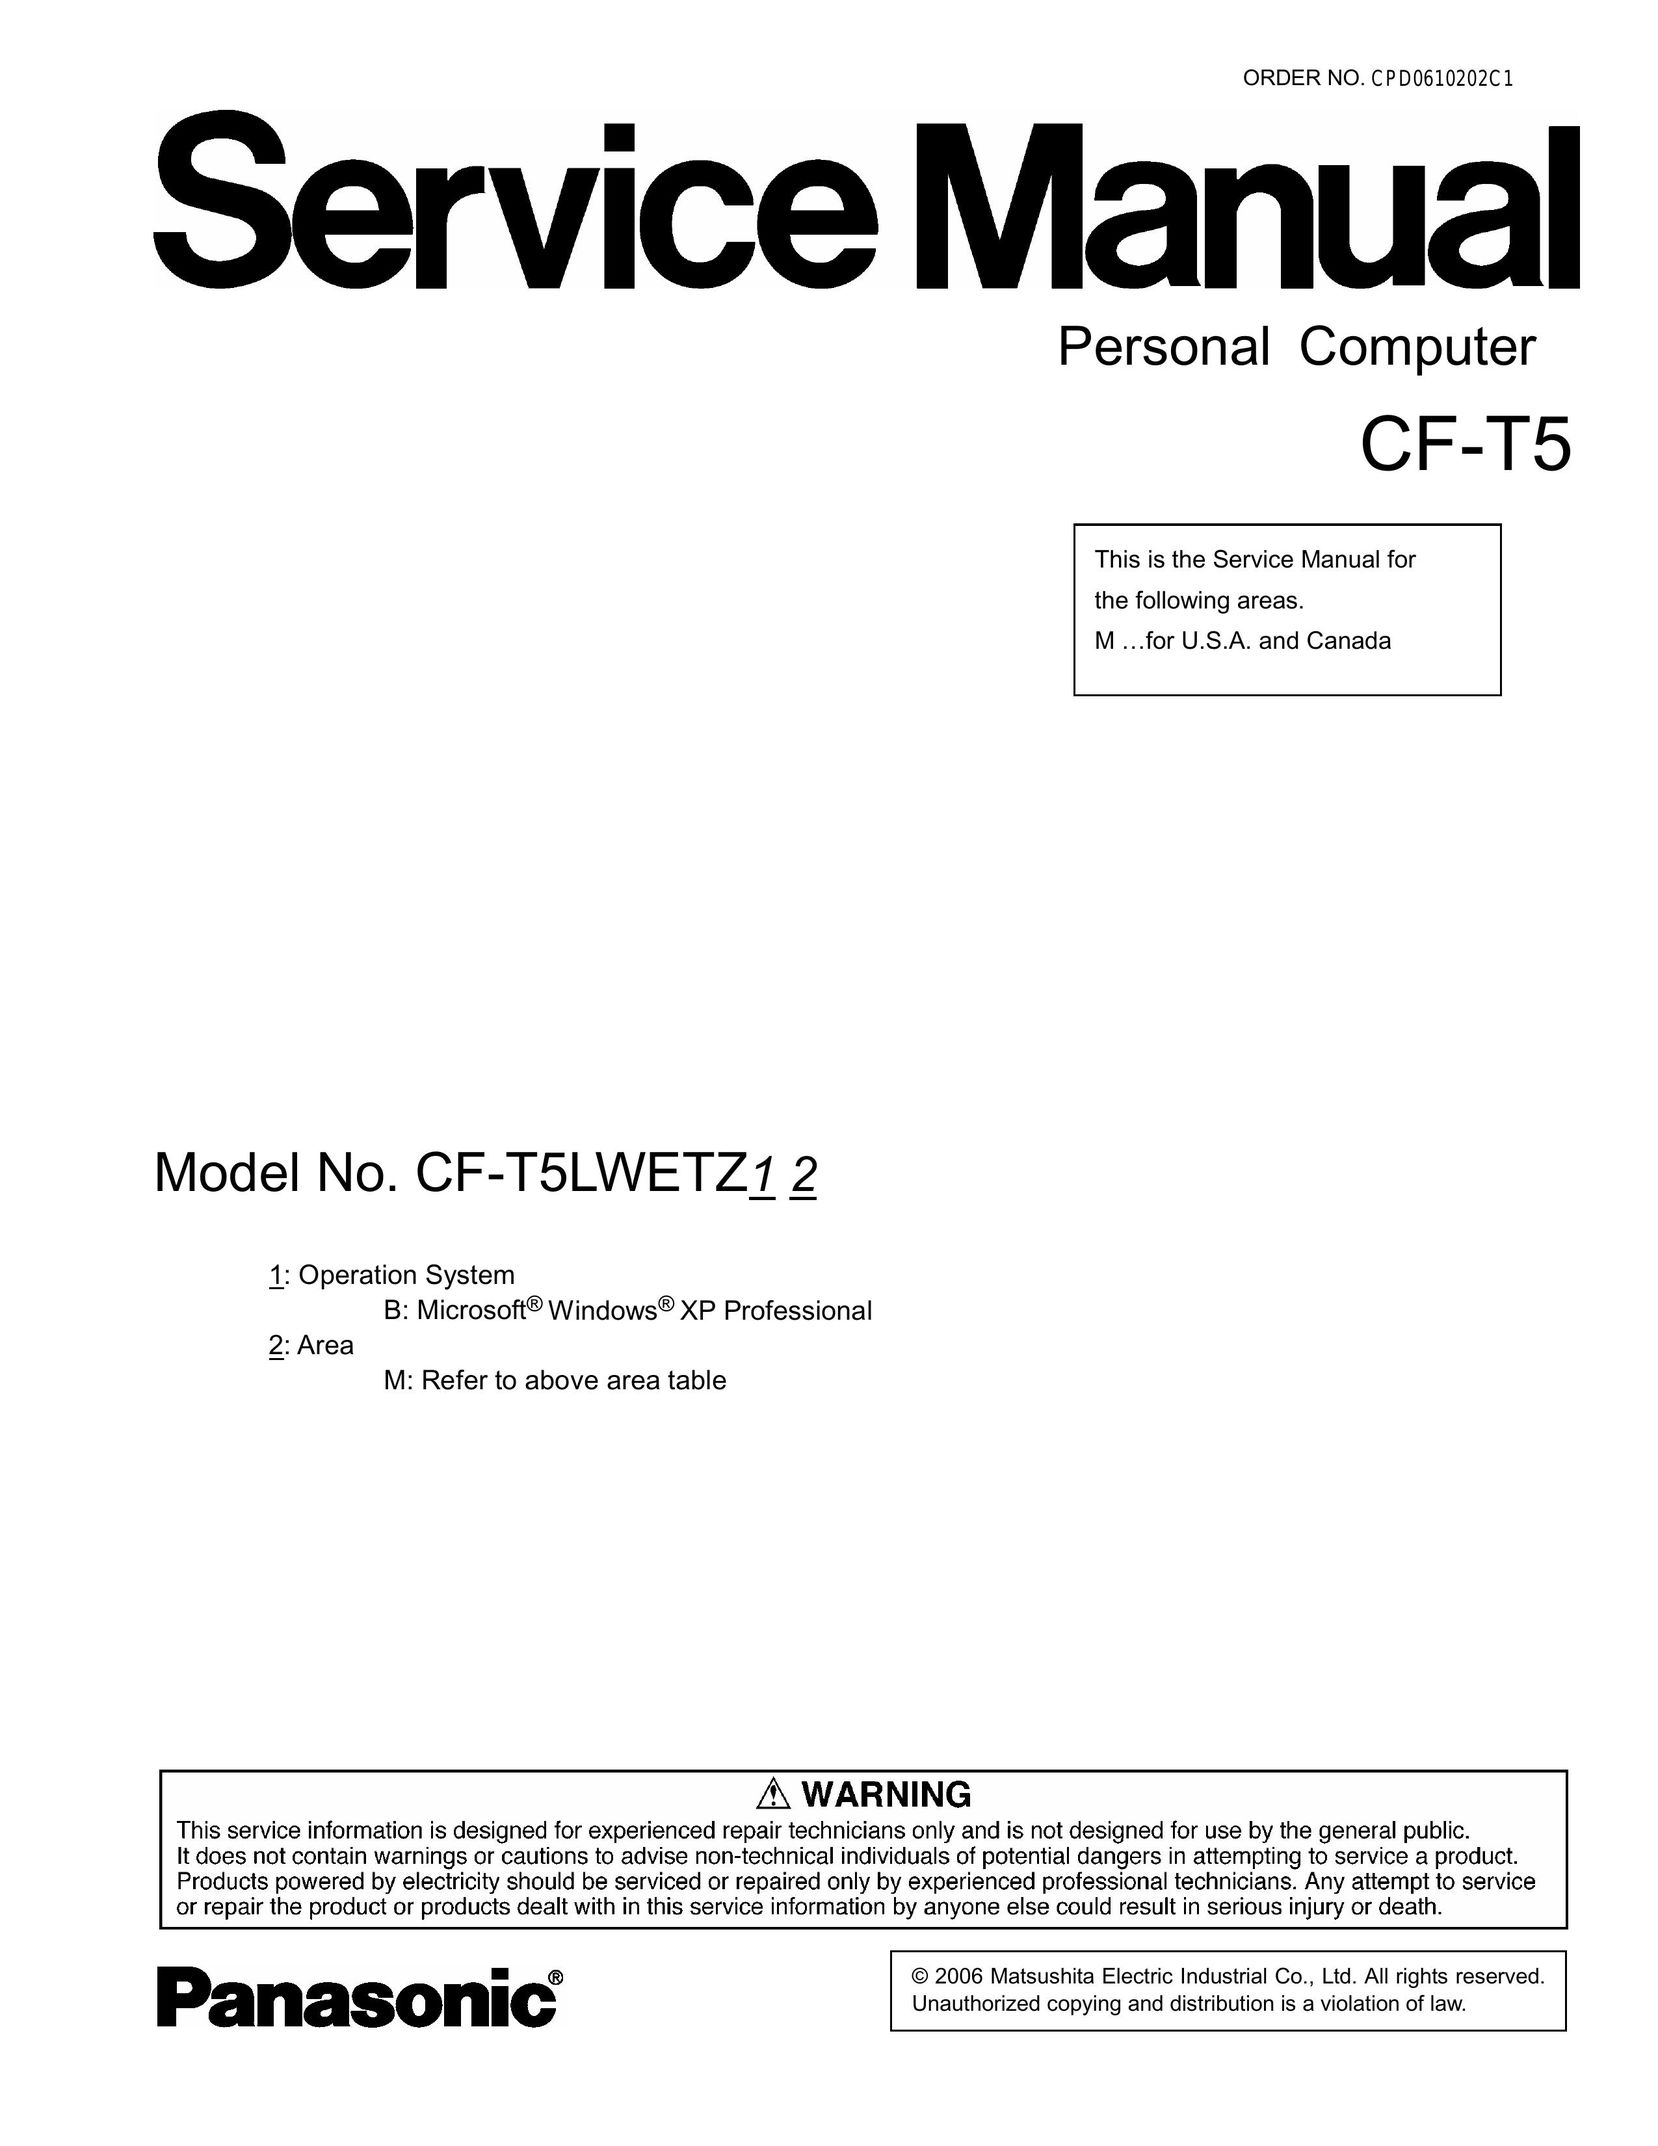 Matsushita CF-T5LWETZ1 2 Personal Computer User Manual